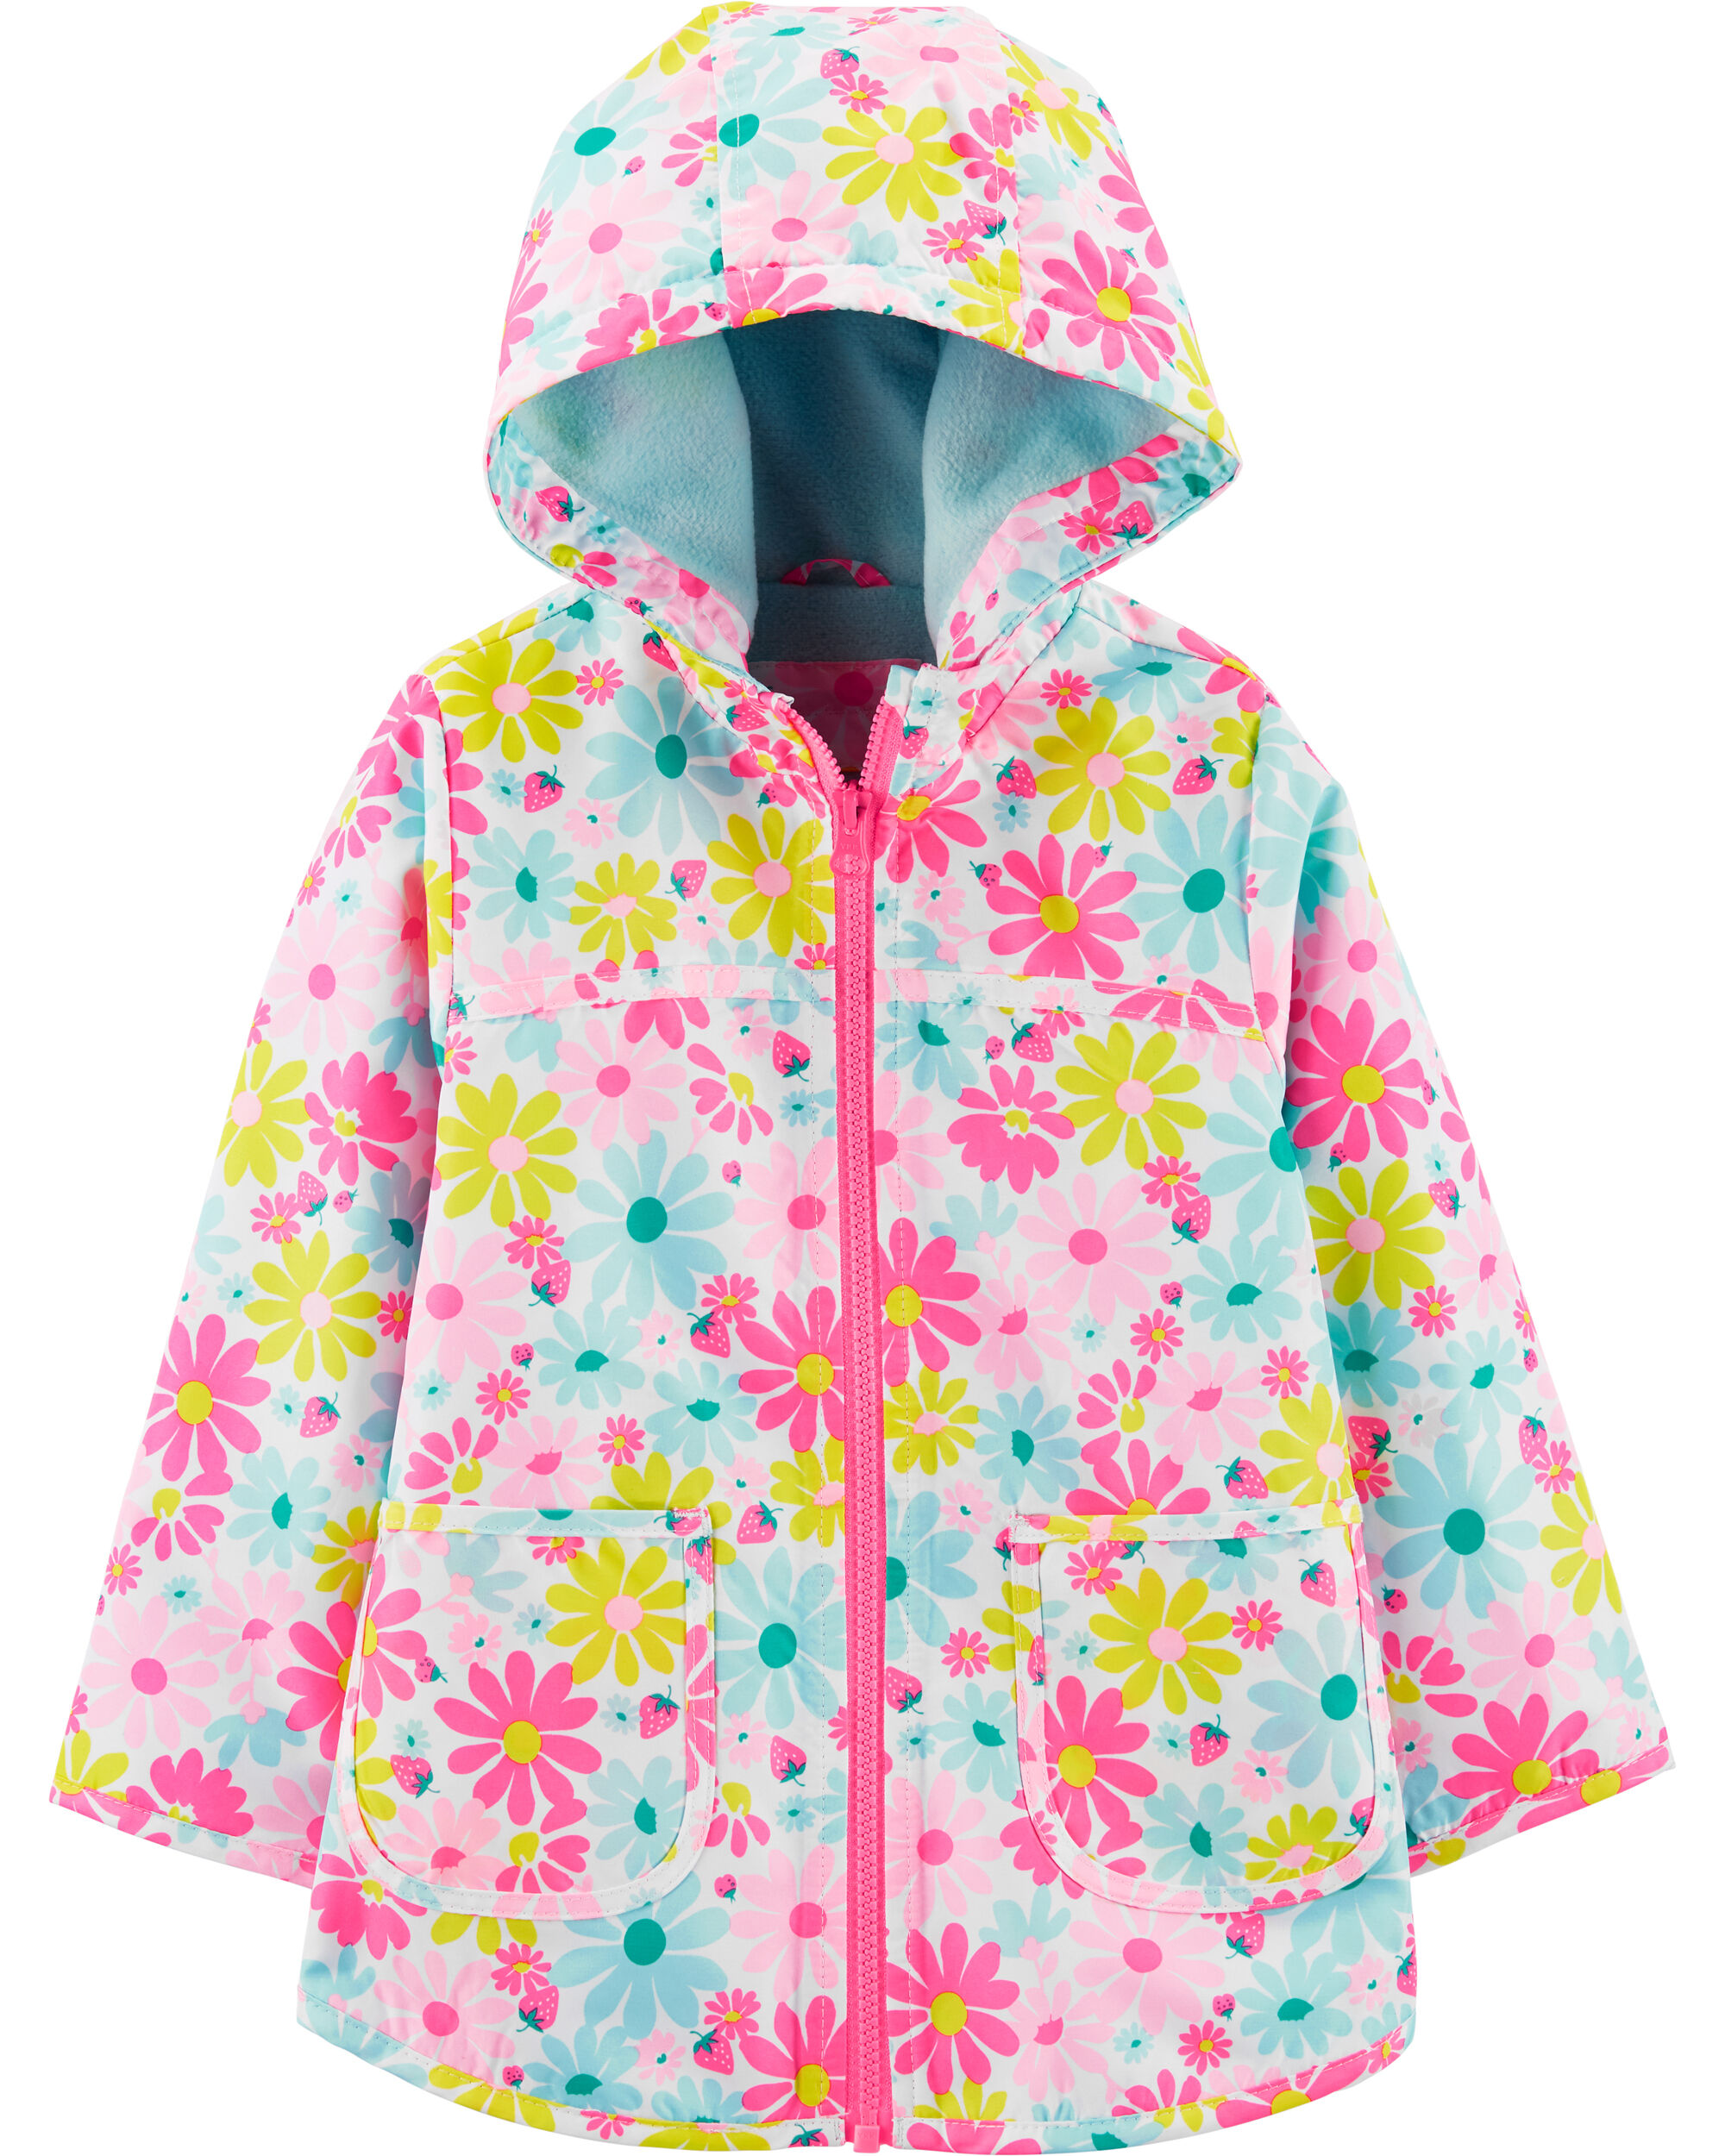 Toddler Girl Fleece-Lined Flower Print Rain Jacket | Carter’s OshKosh ...